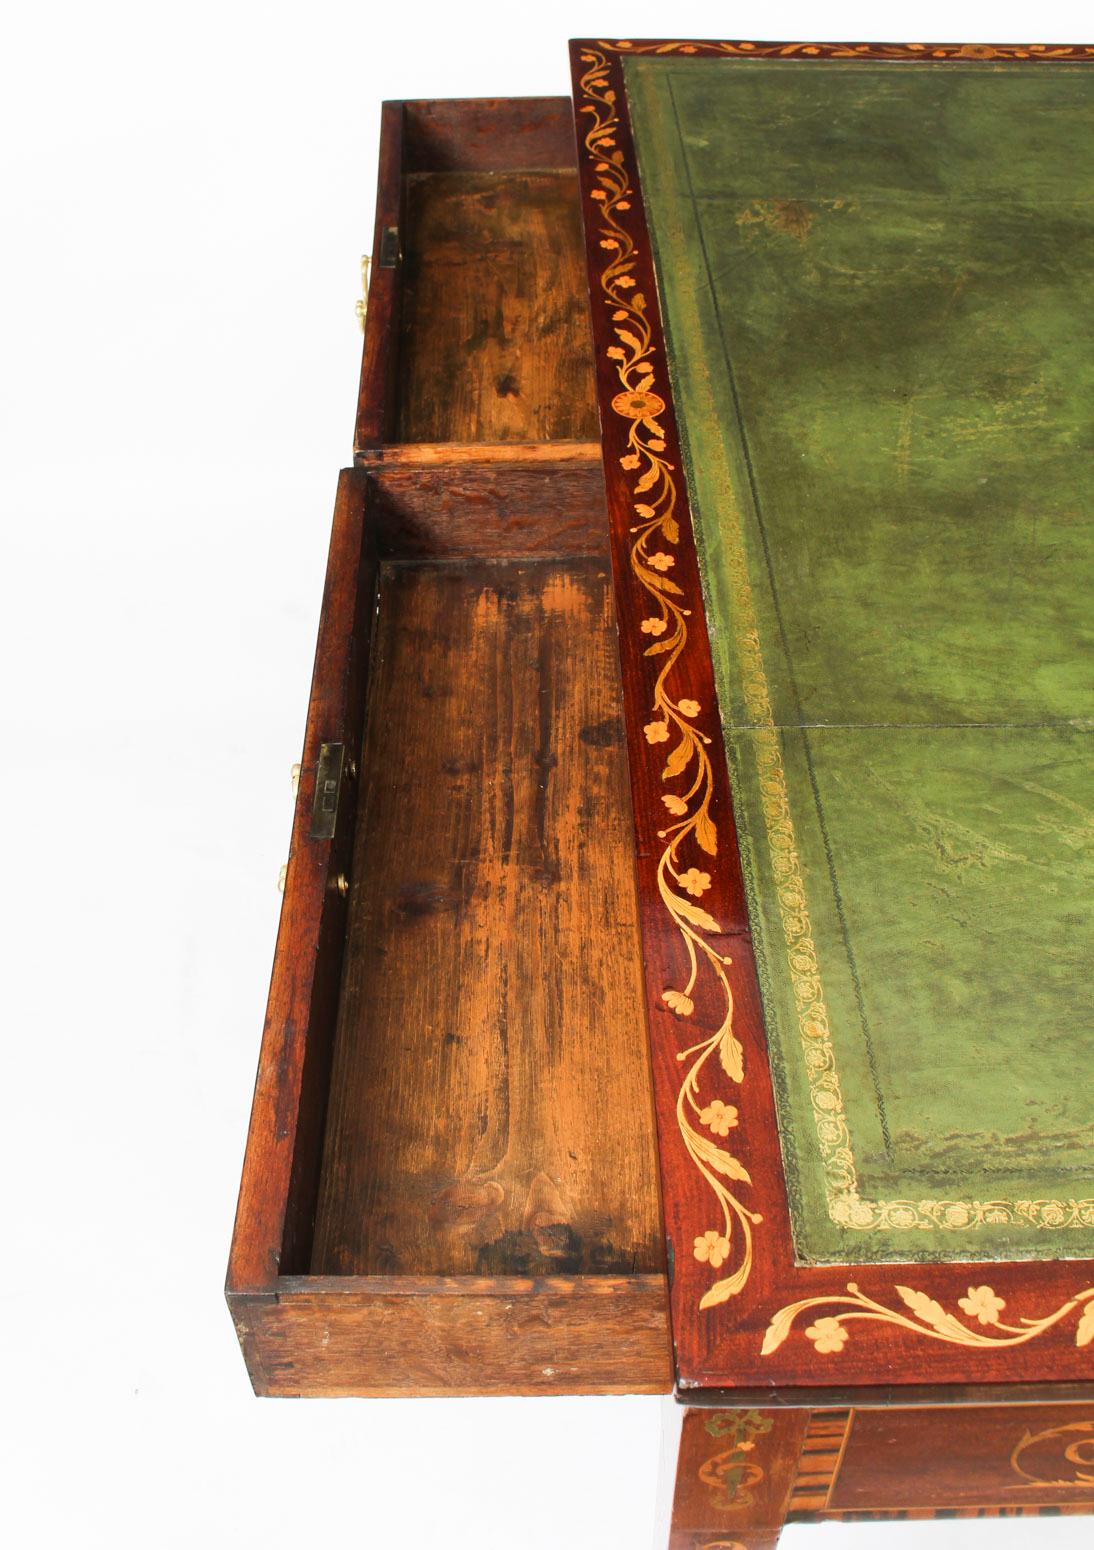 Si tratta di un raffinato tavolo da biblioteca antico di Giorgio III in mogano e intarsio, datato circa 1780.

Il tavolo presenta una splendida intarsiatura floreale e a volute in tutto il suo insieme, con pannelli di intarsio in mogano a fiamma e